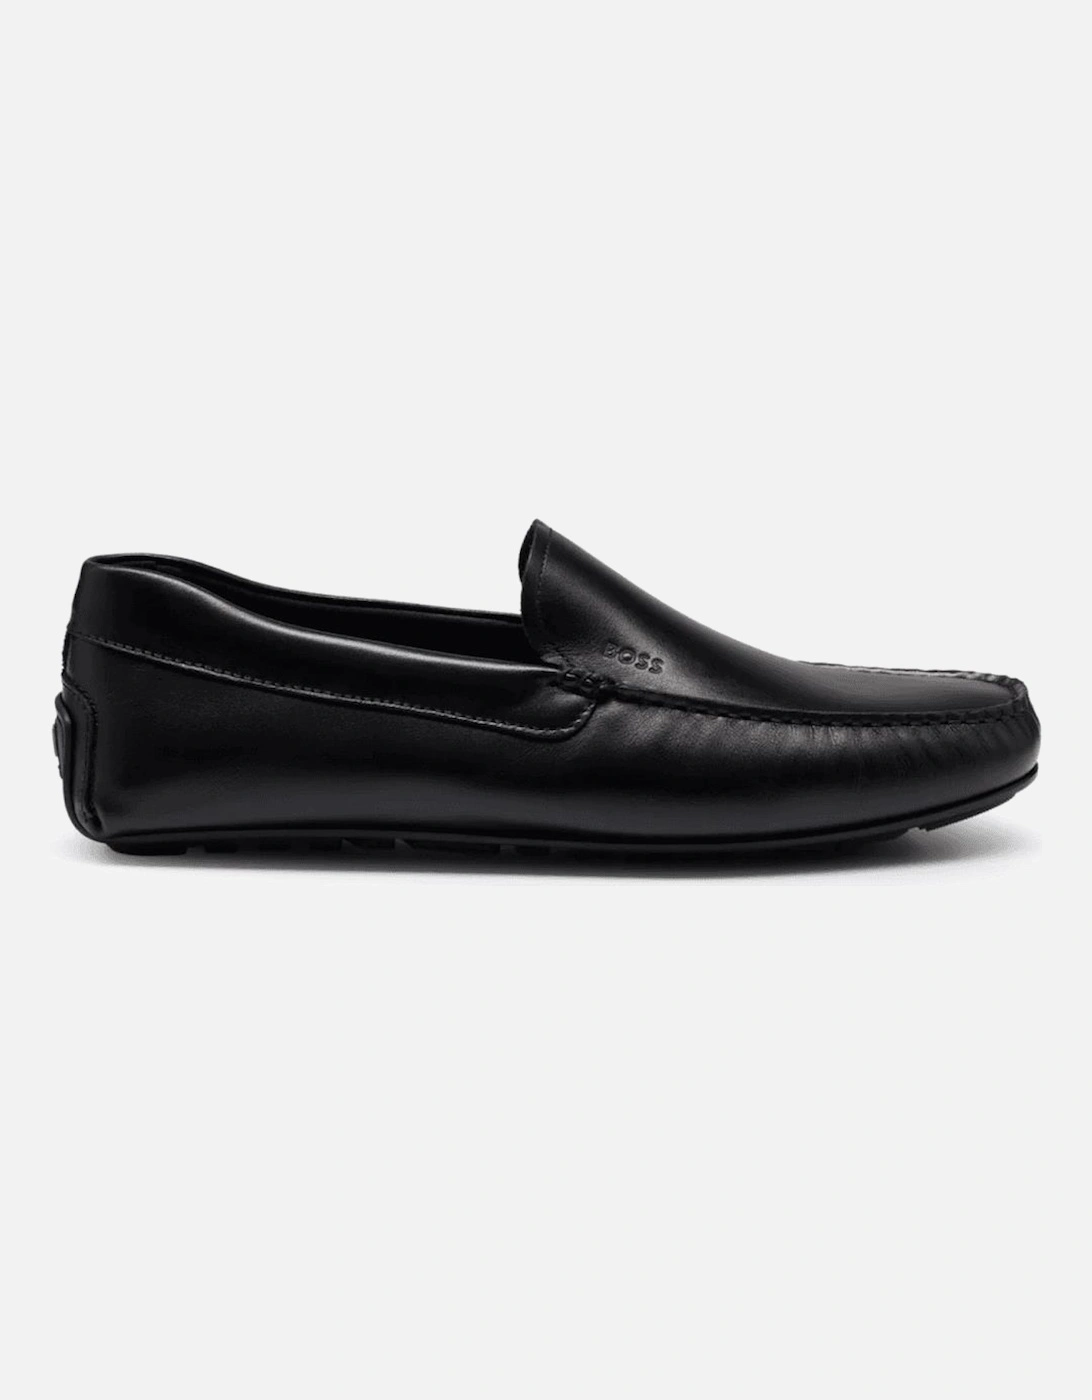 Noel_Mocc Leather Moccasin Black Shoe, 5 of 4